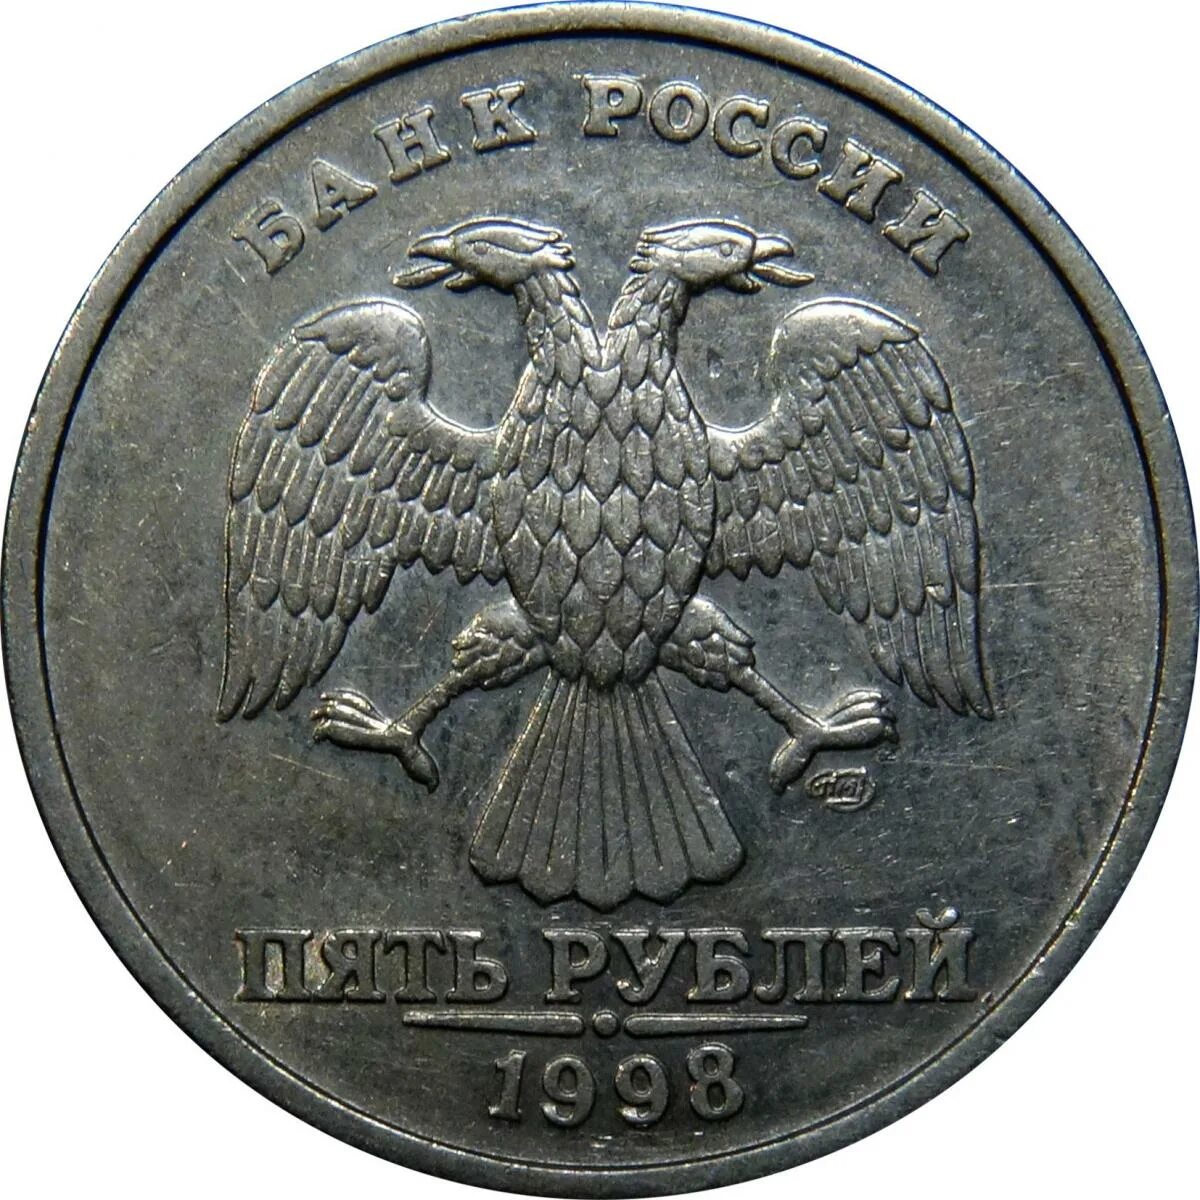 2 рубля стоимость. 2 Рубля 1998 года. 2 Рубля СПМД 98 год. Два рубля СПМД 1998. Редкие монеты 2 рубля 1998.